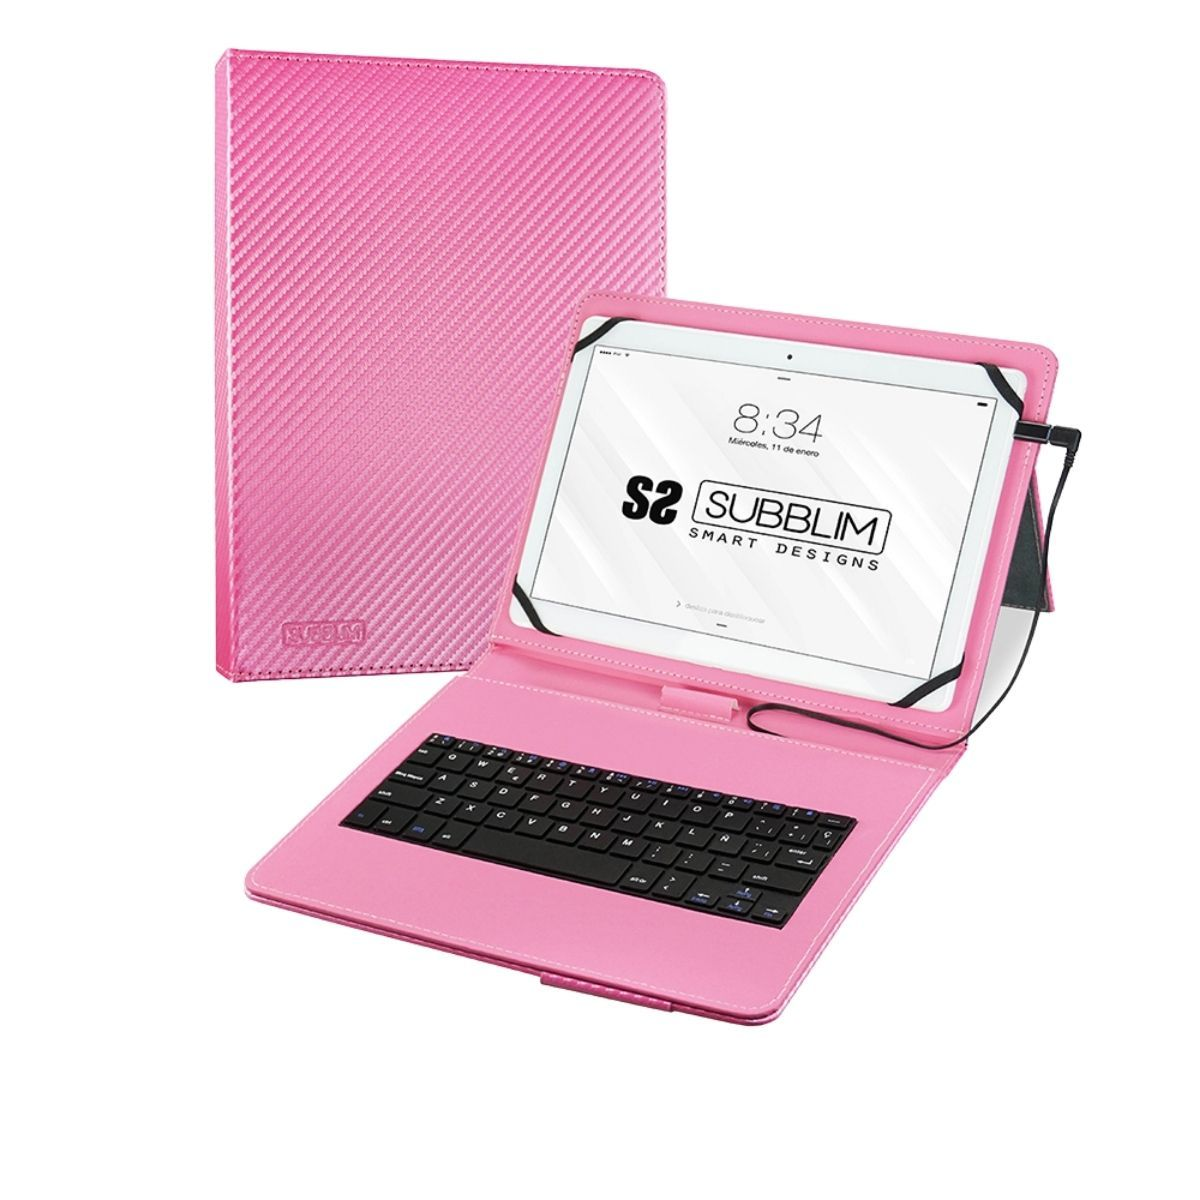 Subblim Funda Con teclado para tablet multicolor 10.1 inch micro usb keytab pro 101 pink rosa universal 10.1subblim 11 compatible todas las android conector